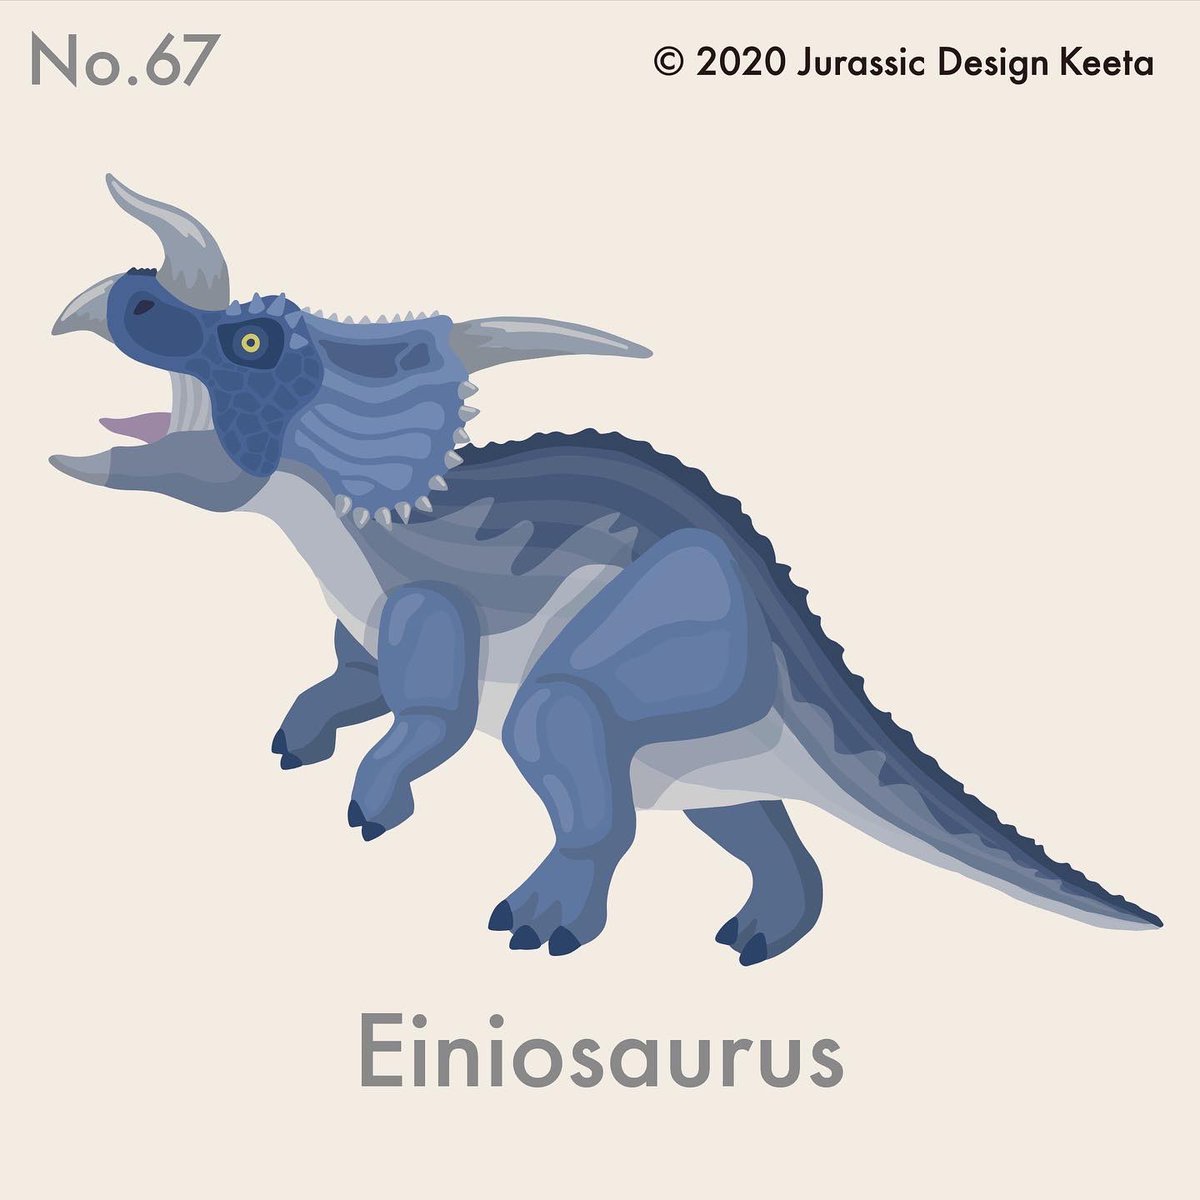 ケータ 恐竜イラスト グッズデザイン در توییتر No 067 Einiosaurus エイニオサウルス Keeta 前方に曲がった一本角が ちょーかっこいいエイニオサウルス でも 何々トプスという名前でない分 違和感が Juratopia ジュラトピア 恐竜